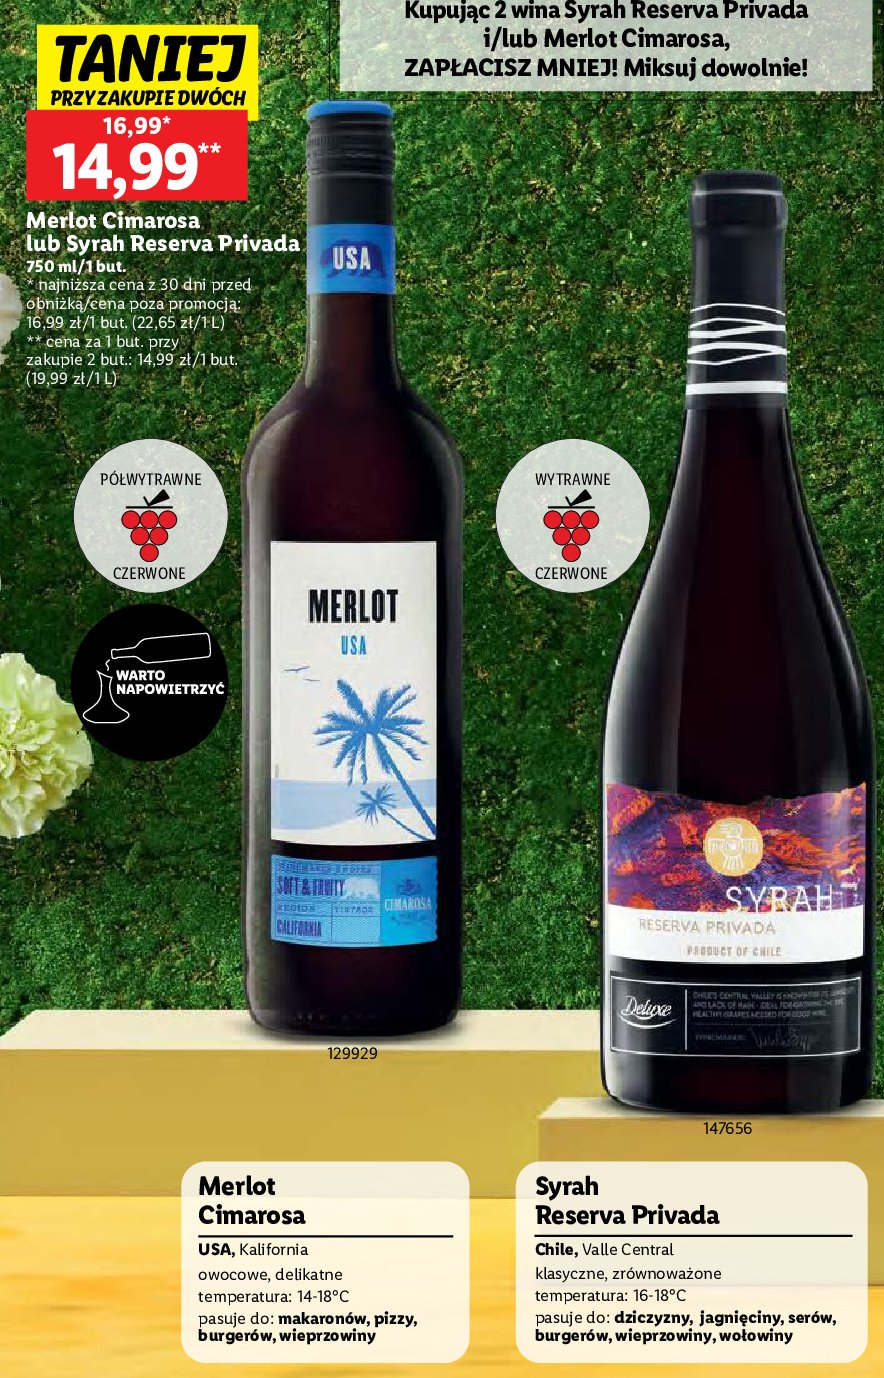 Wino Syrah reserva privada promocja